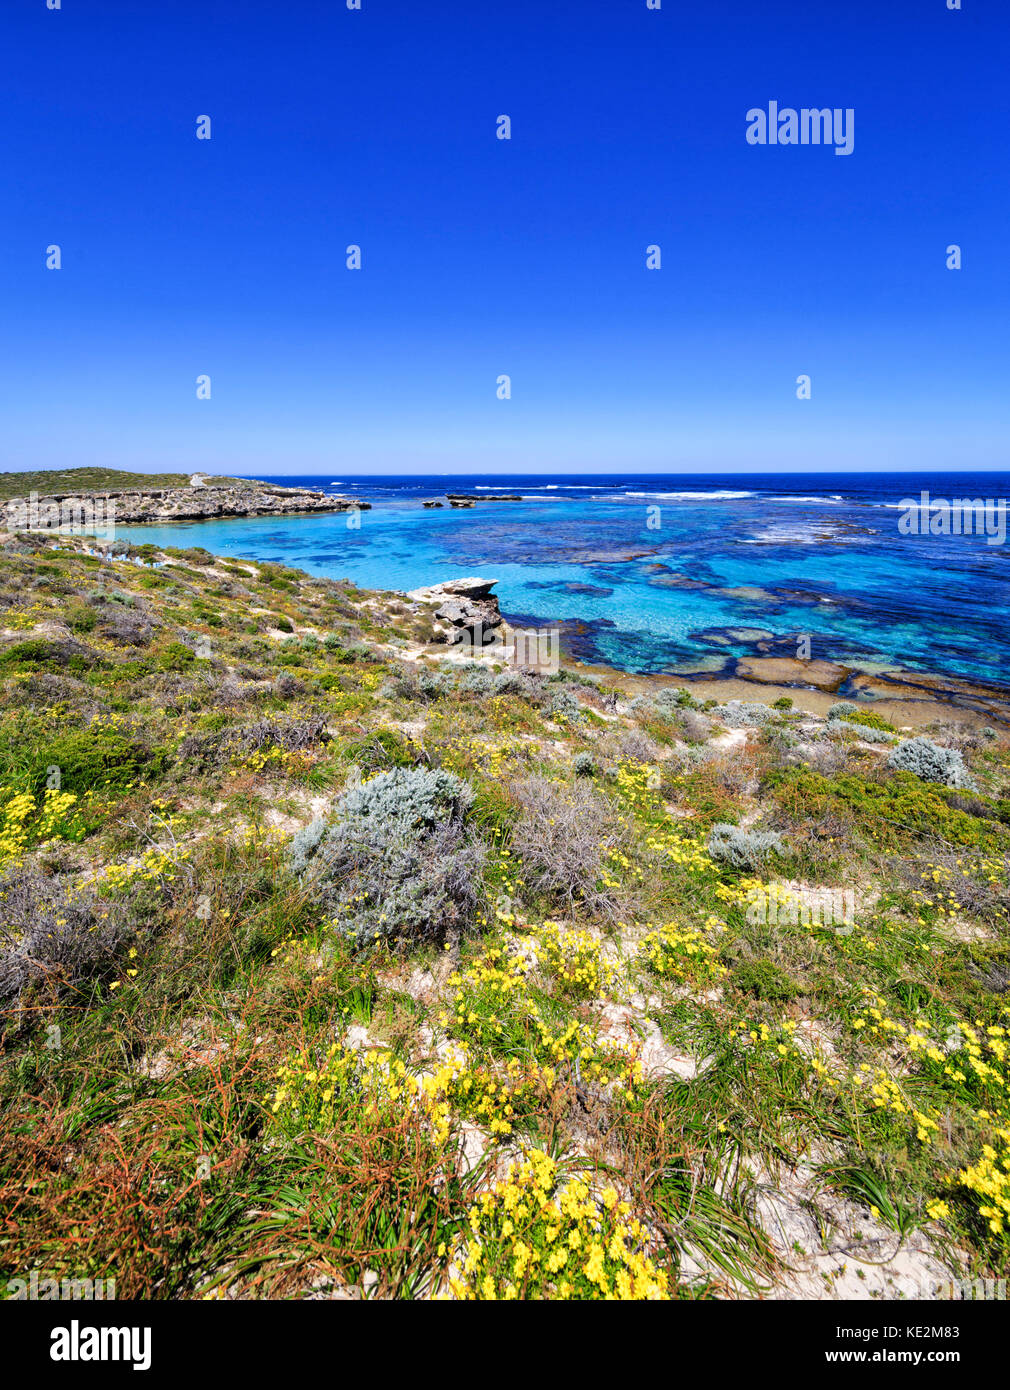 Schöne, klare Wasser bei Lachs Punkt auf die Insel Rottnest Island, Australien Stockfoto